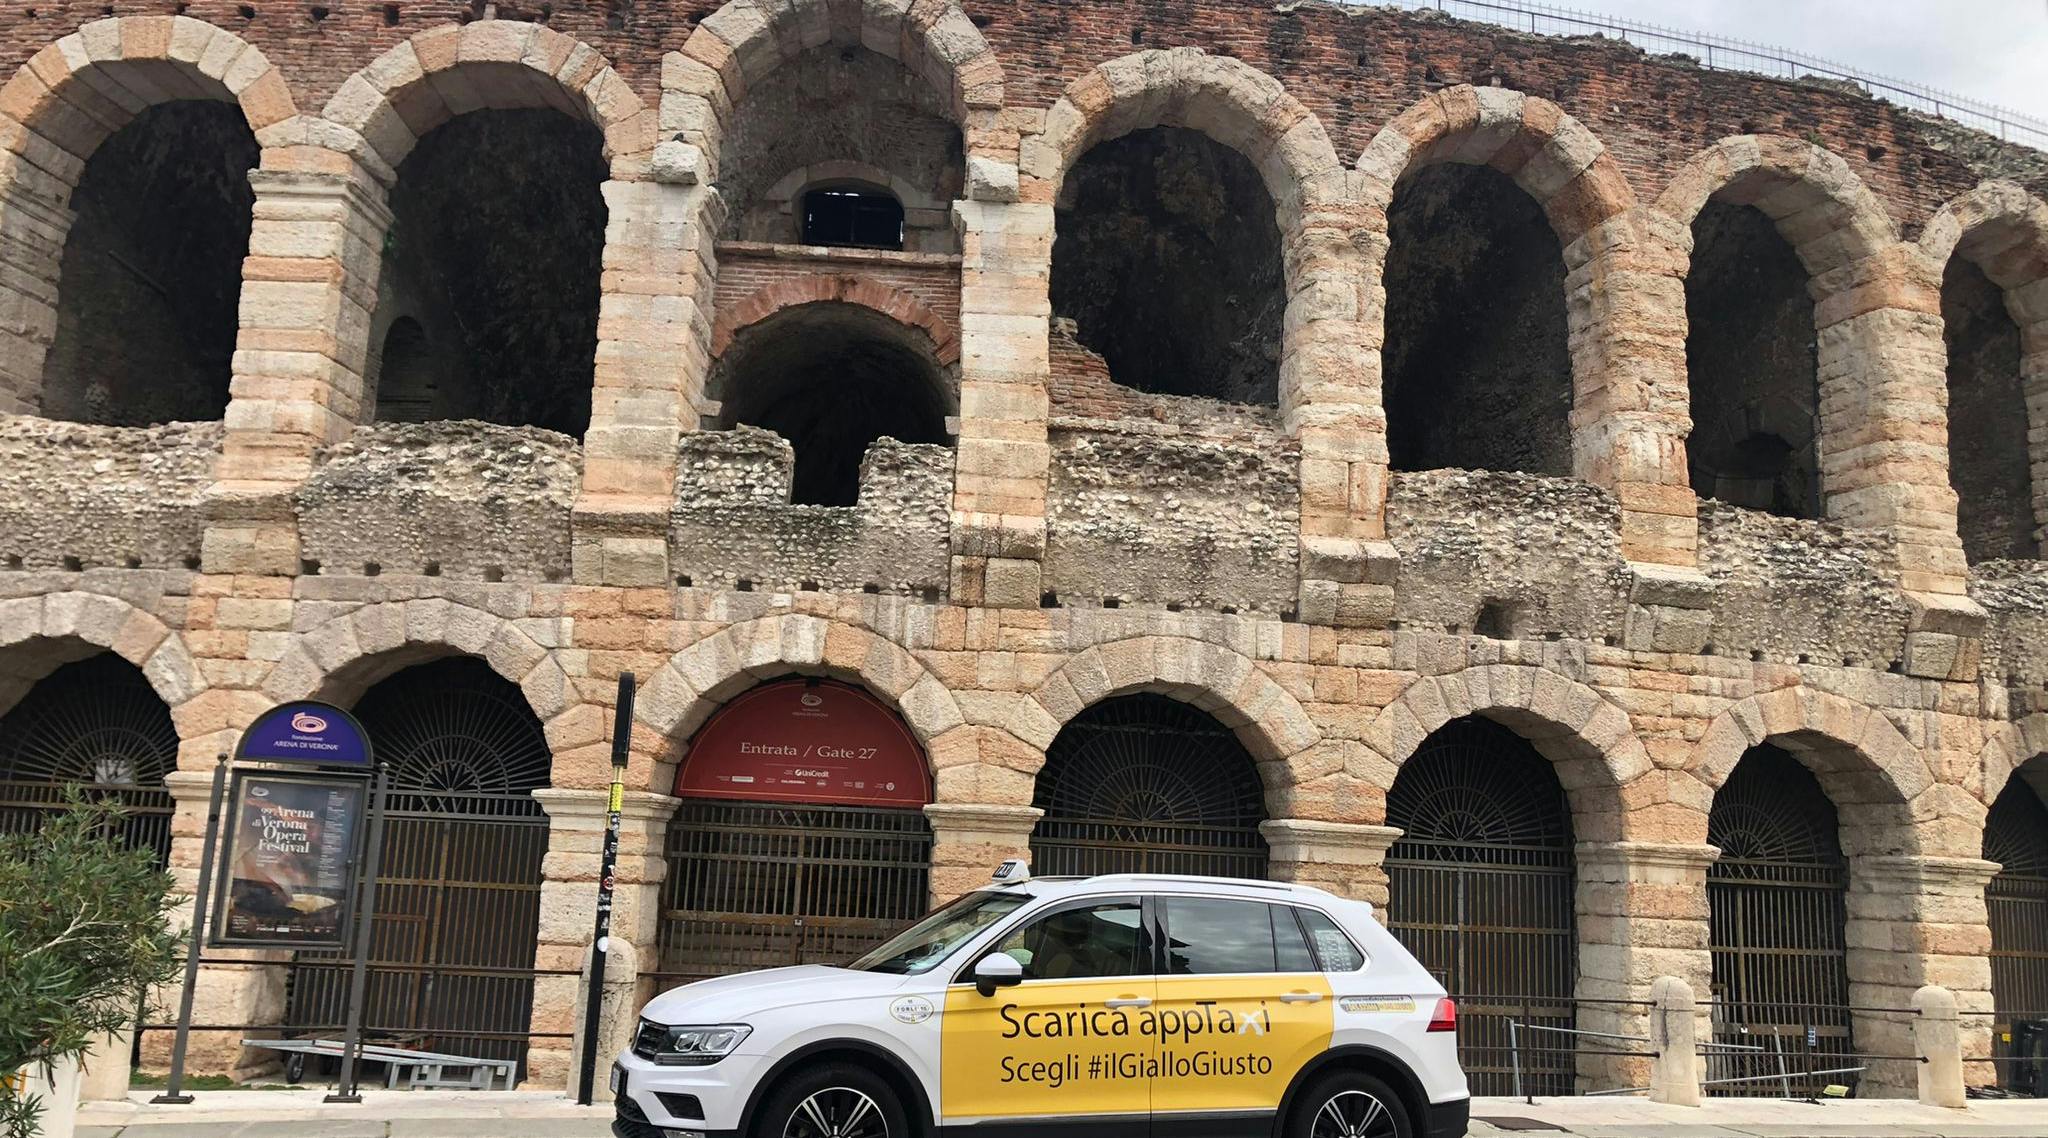 App taxi in Verona arena